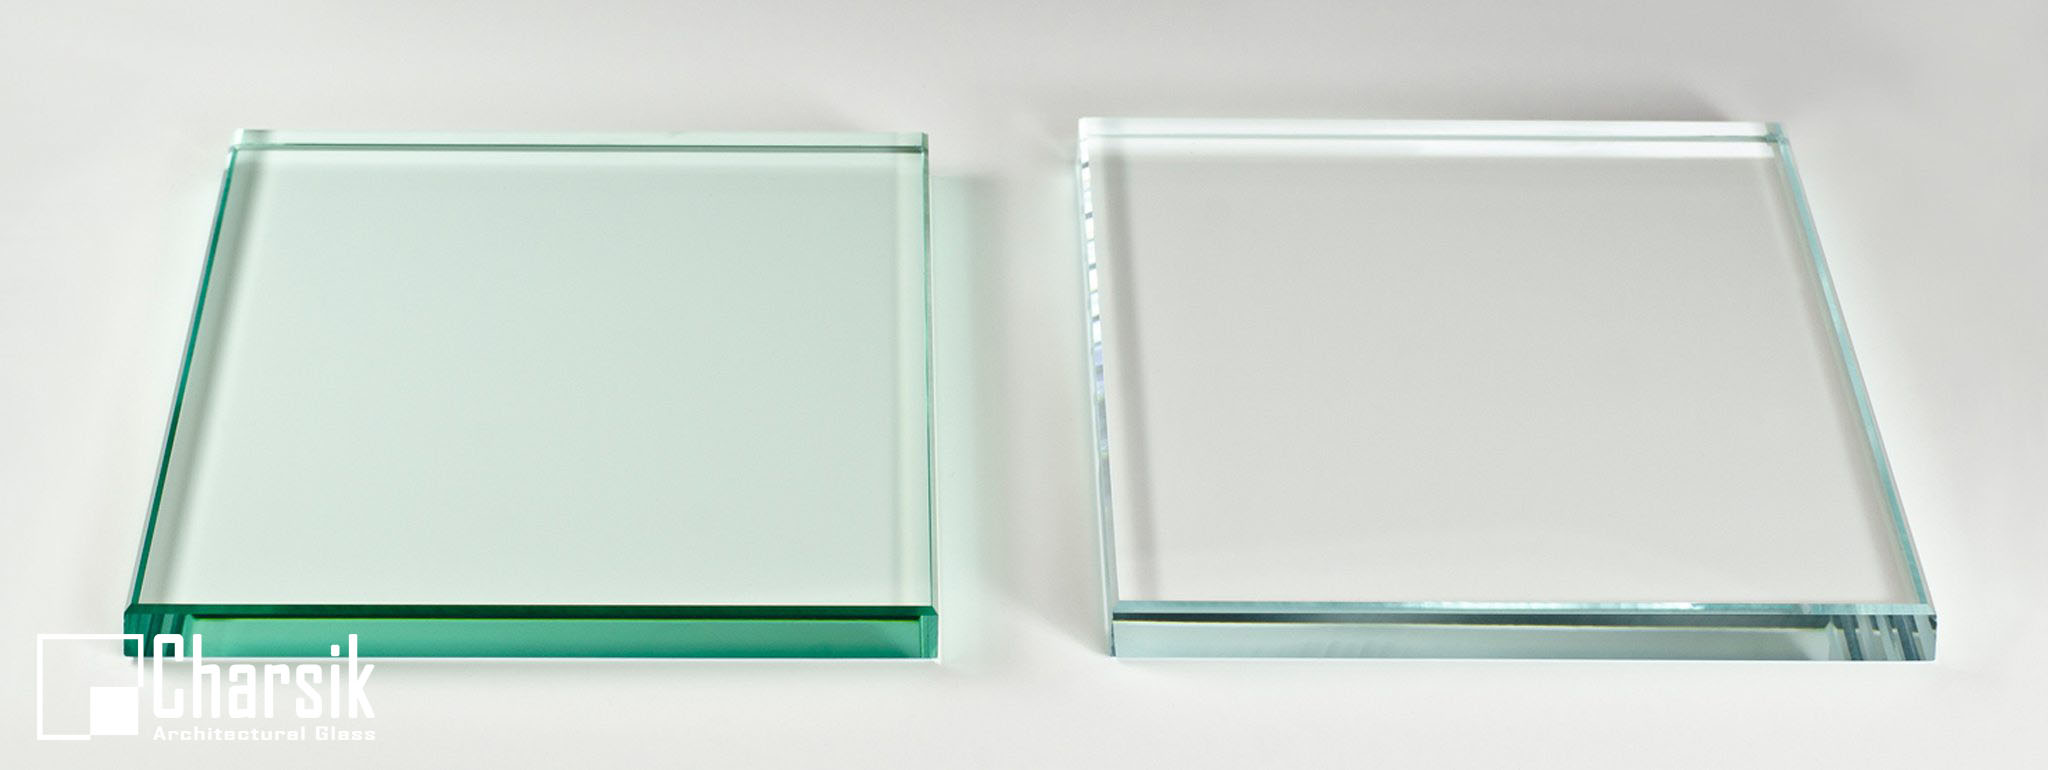 چرا برخی از شیشه های ساده، سبز به نظر می رسند؟